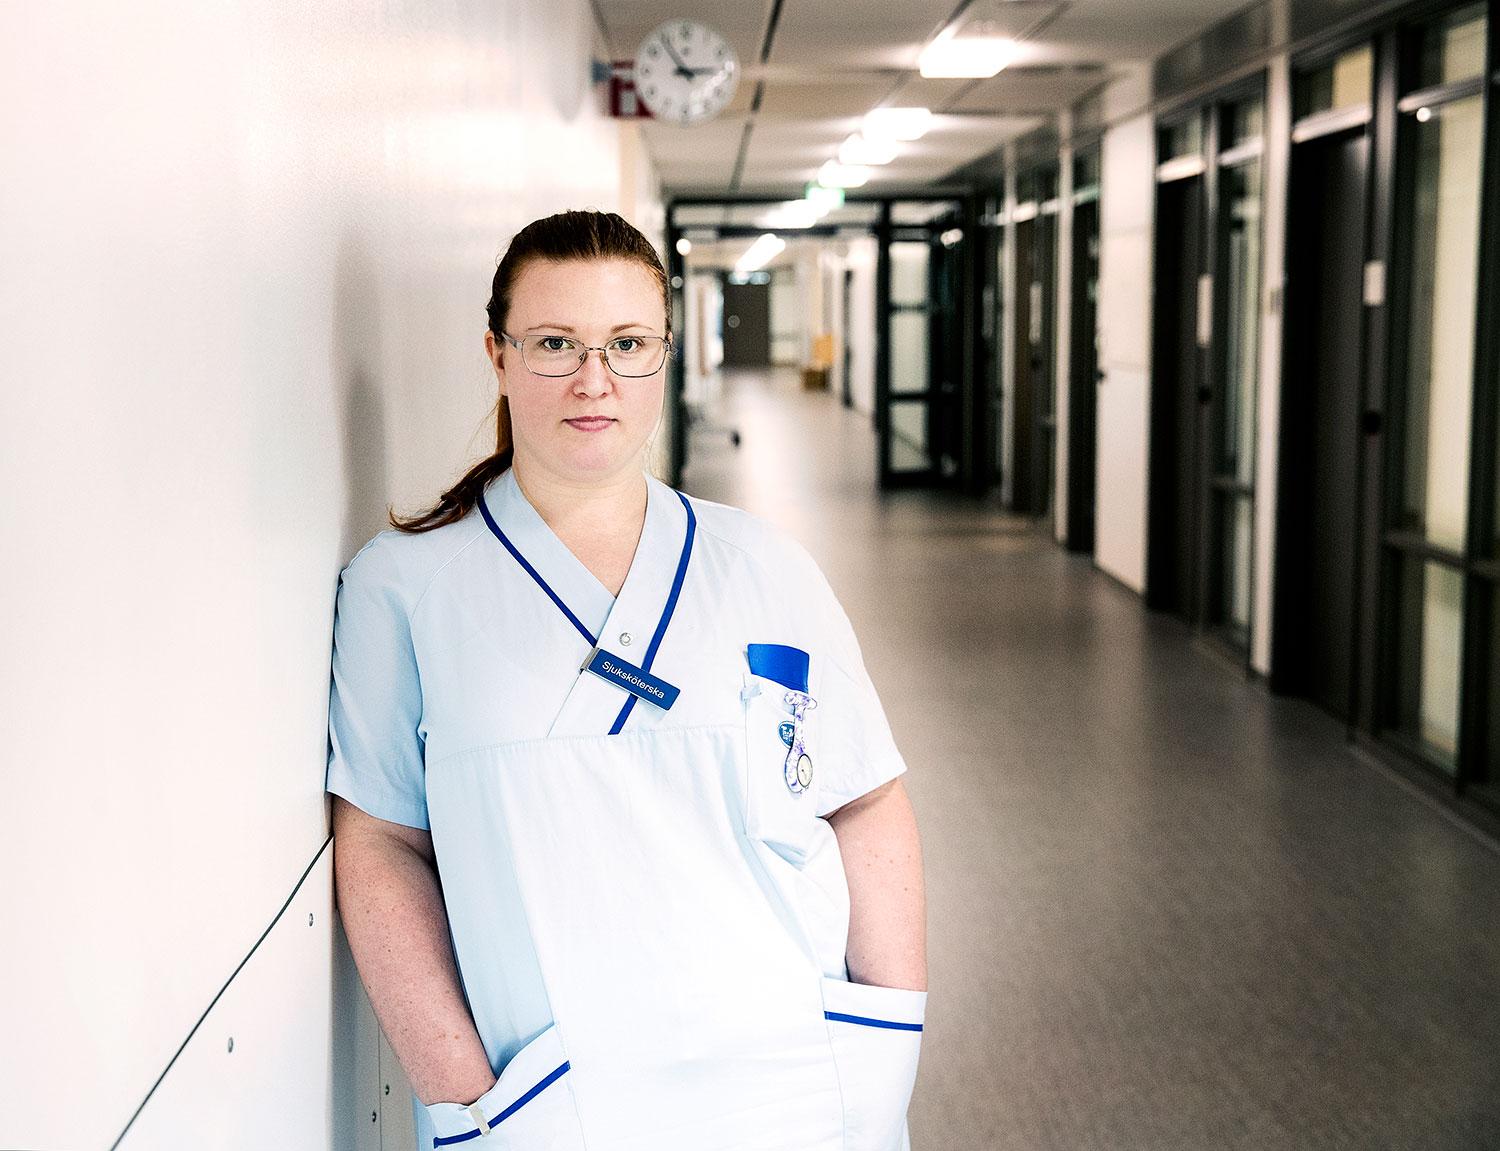 ”Det känns som att de inte bryr sig om kompetens över huvud taget”, säger sjuksköterskan Karin Söderquist.